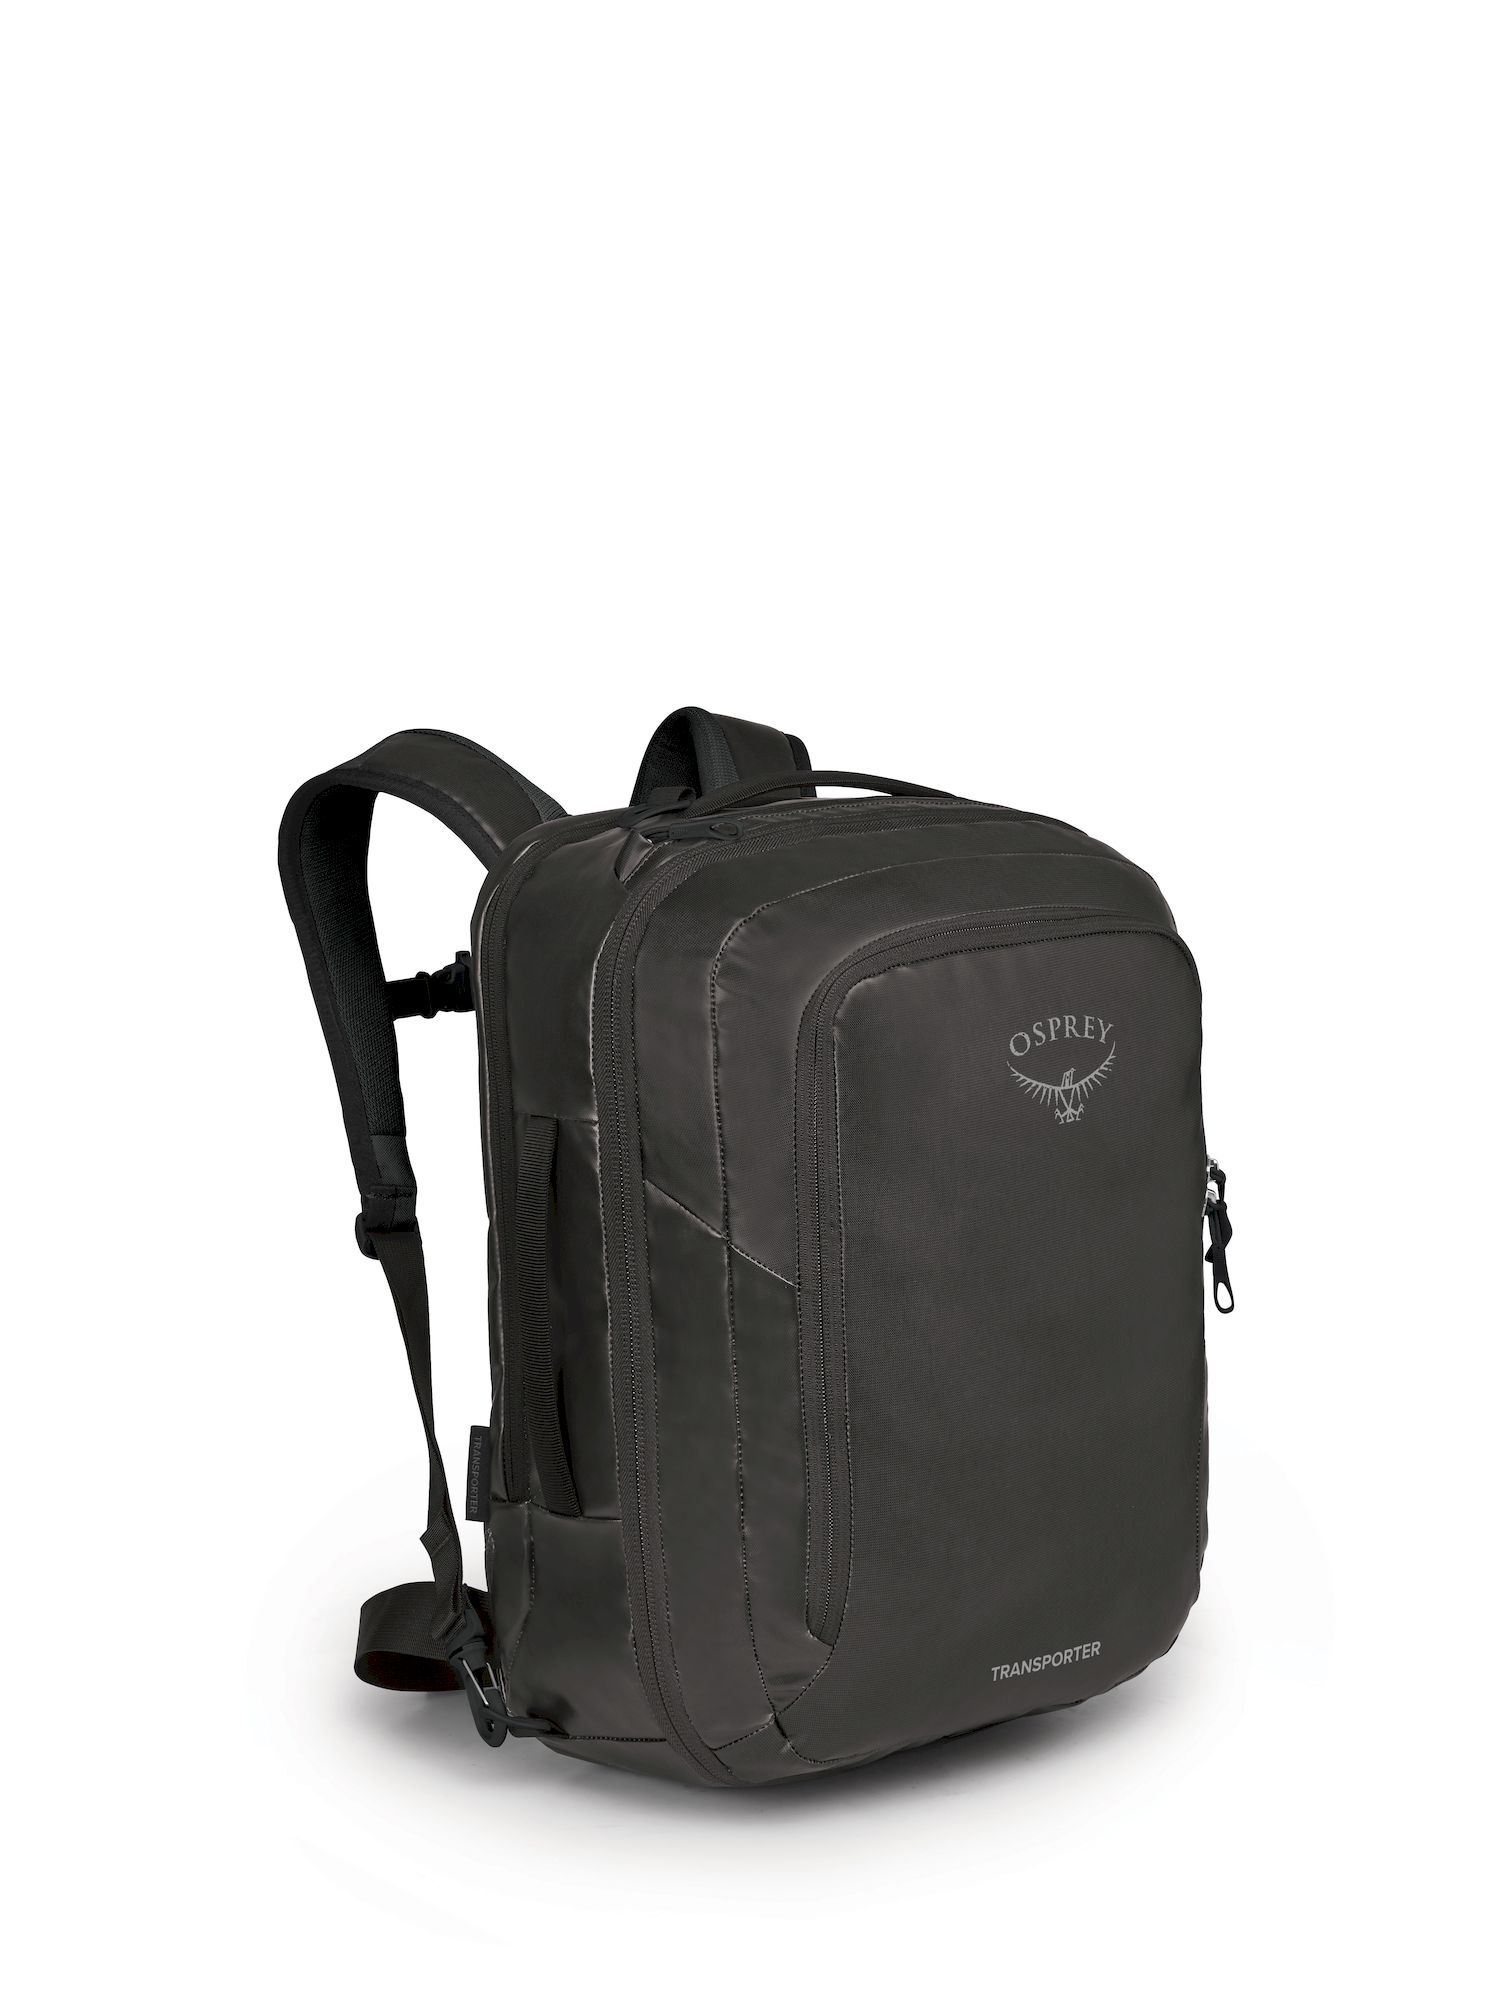 Osprey Transporter Global Carry-On Bag - Travel bag | Hardloop